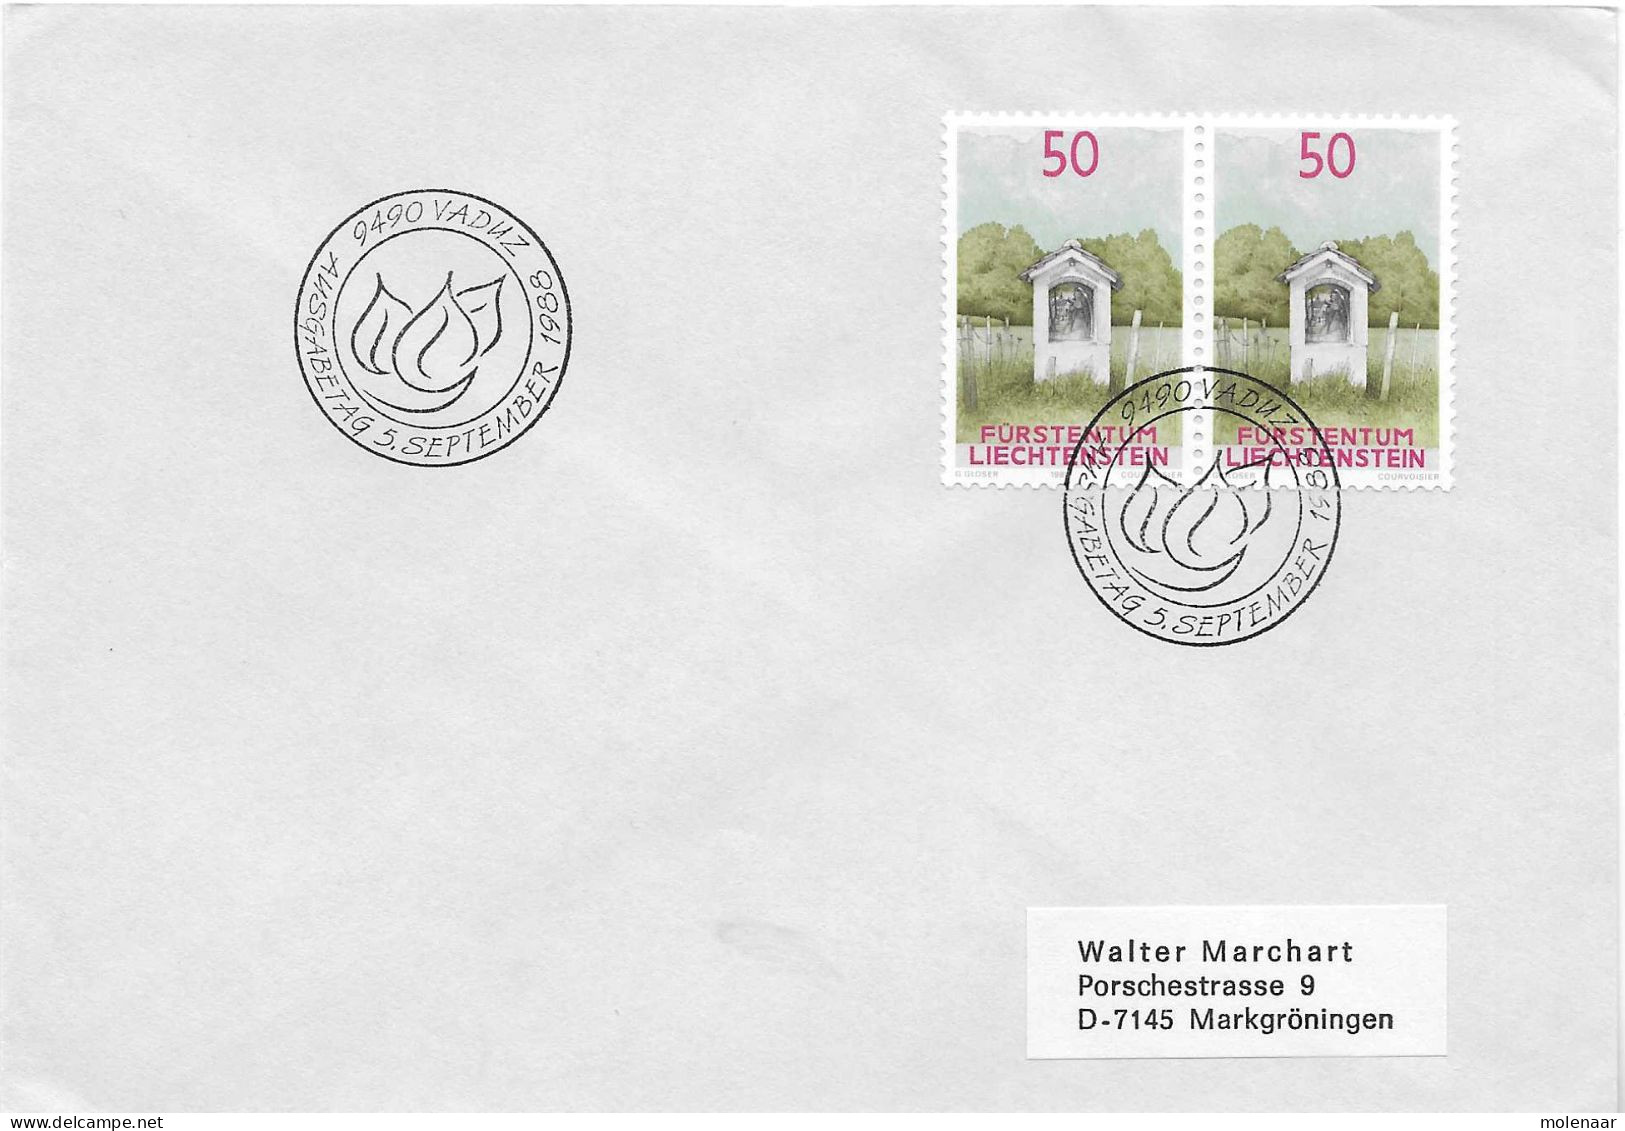 Postzegels > Europa > Liechtenstein > 1981-90 > Brief Met 2x No. 957 (17602) - Covers & Documents